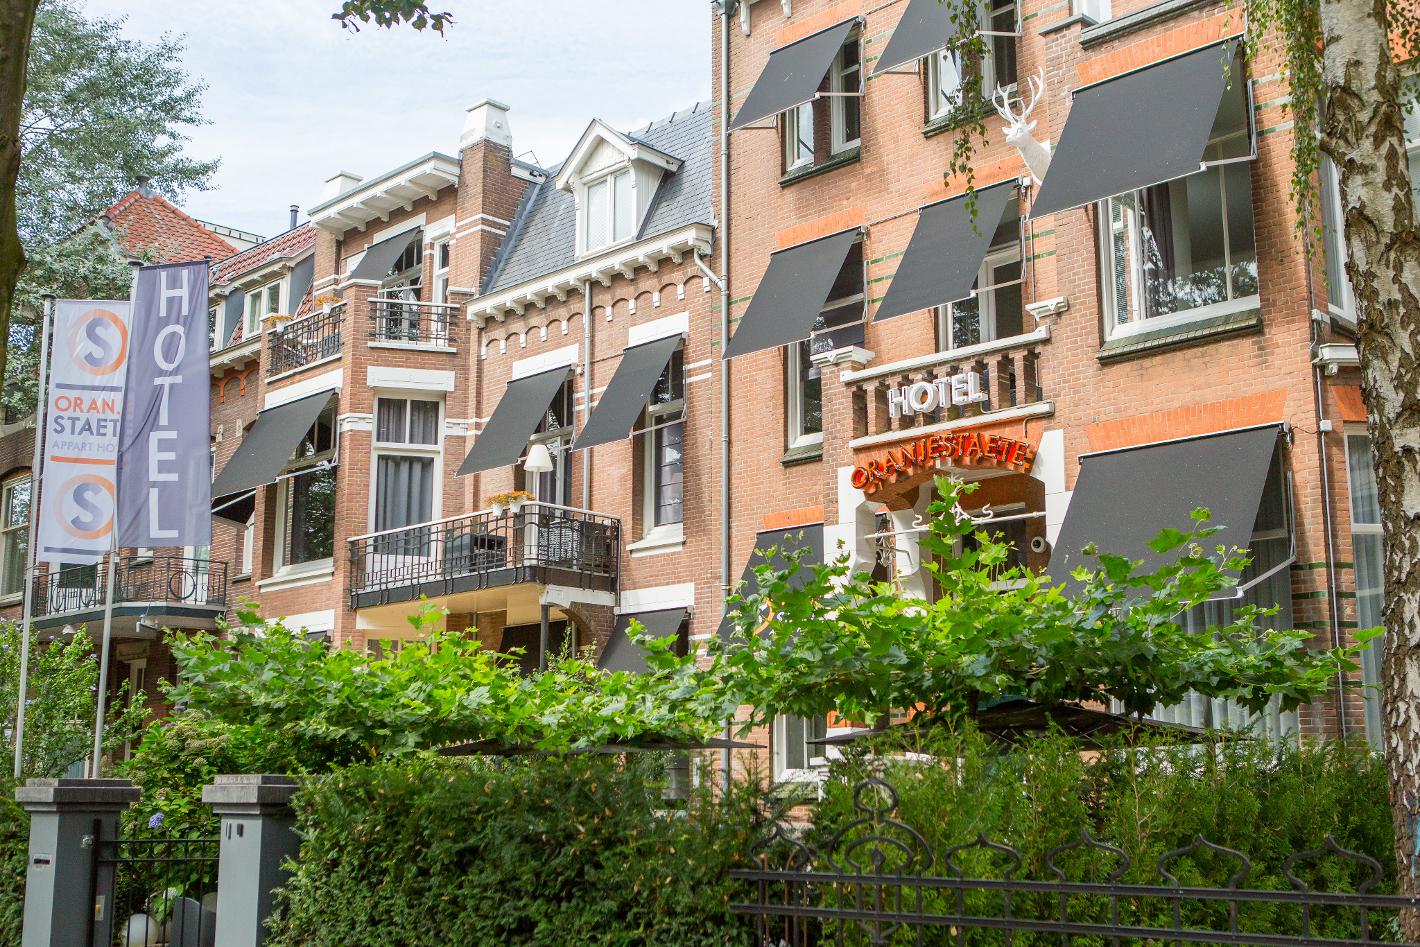 Foto Apparthotel Oranjestaete in Nijmegen, Slapen, Hotels & logies - #5